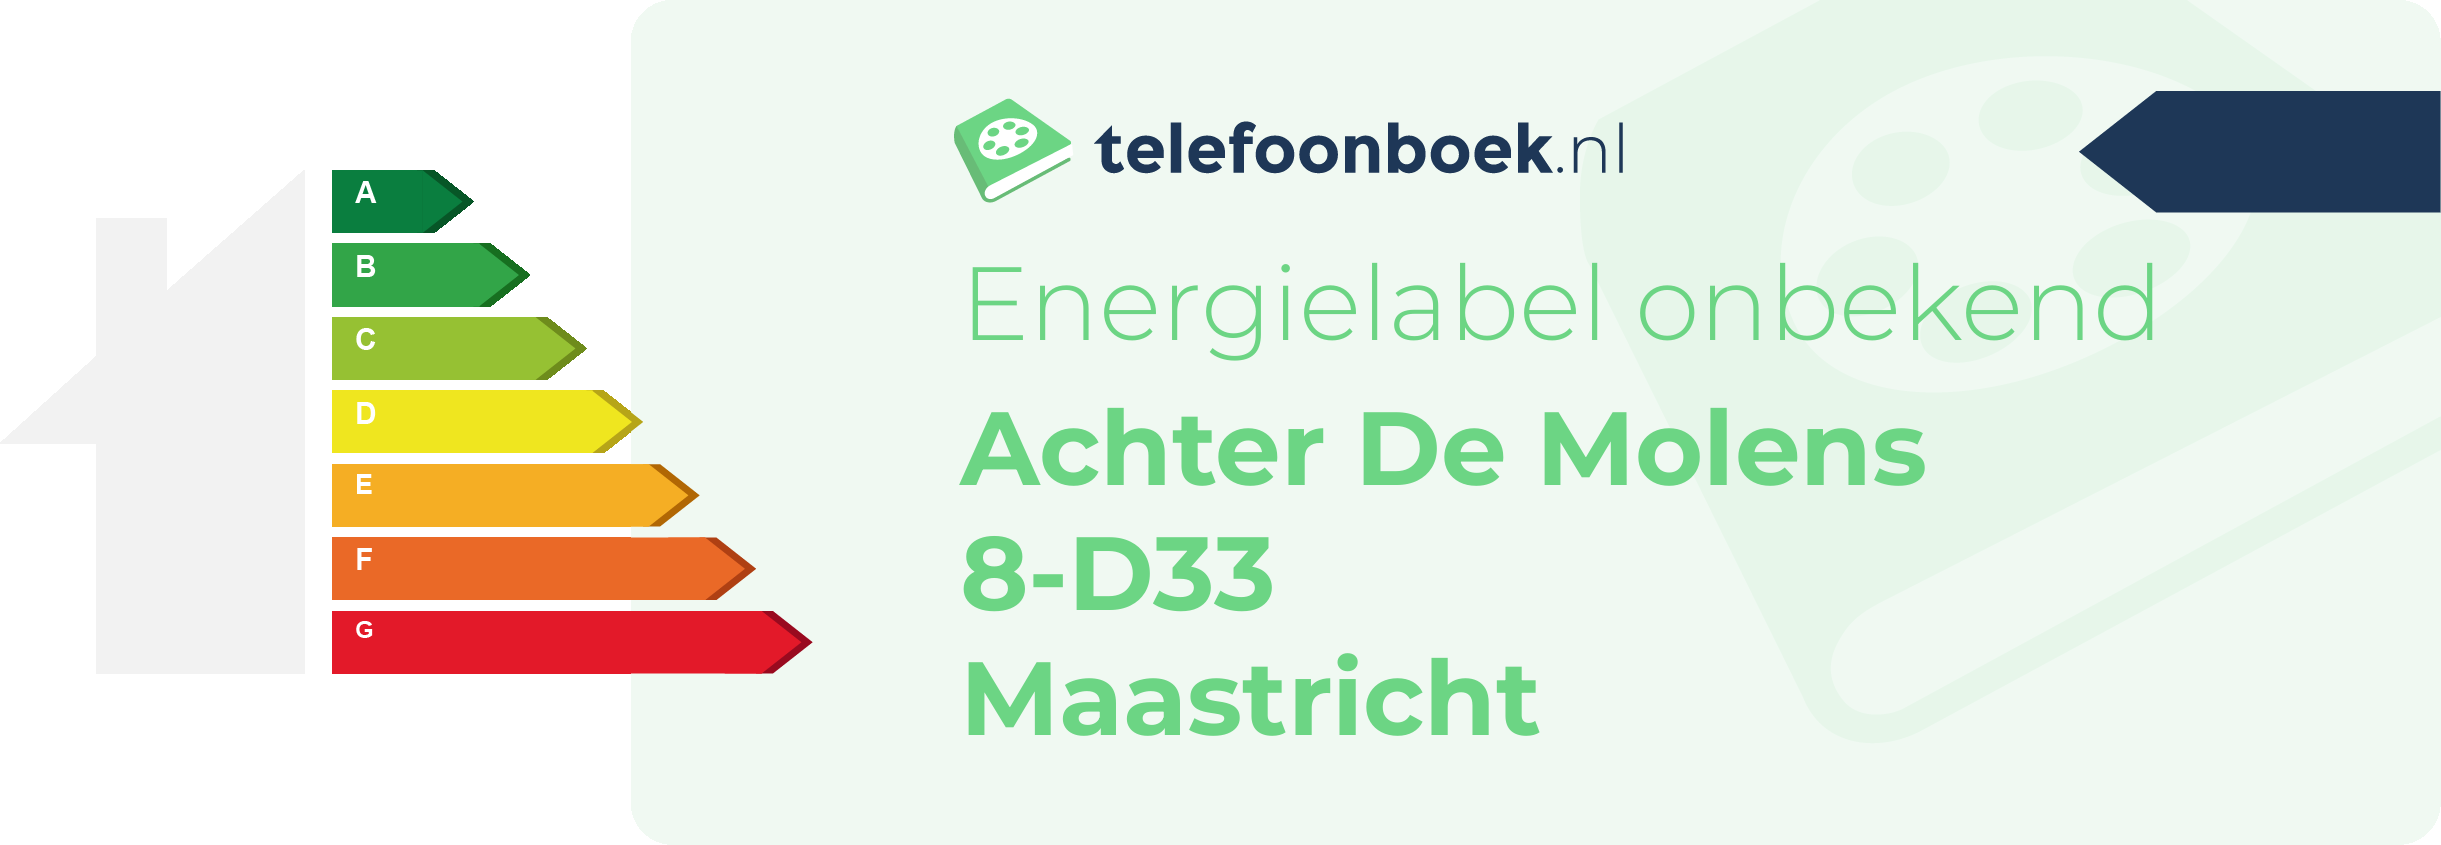 Energielabel Achter De Molens 8-D33 Maastricht